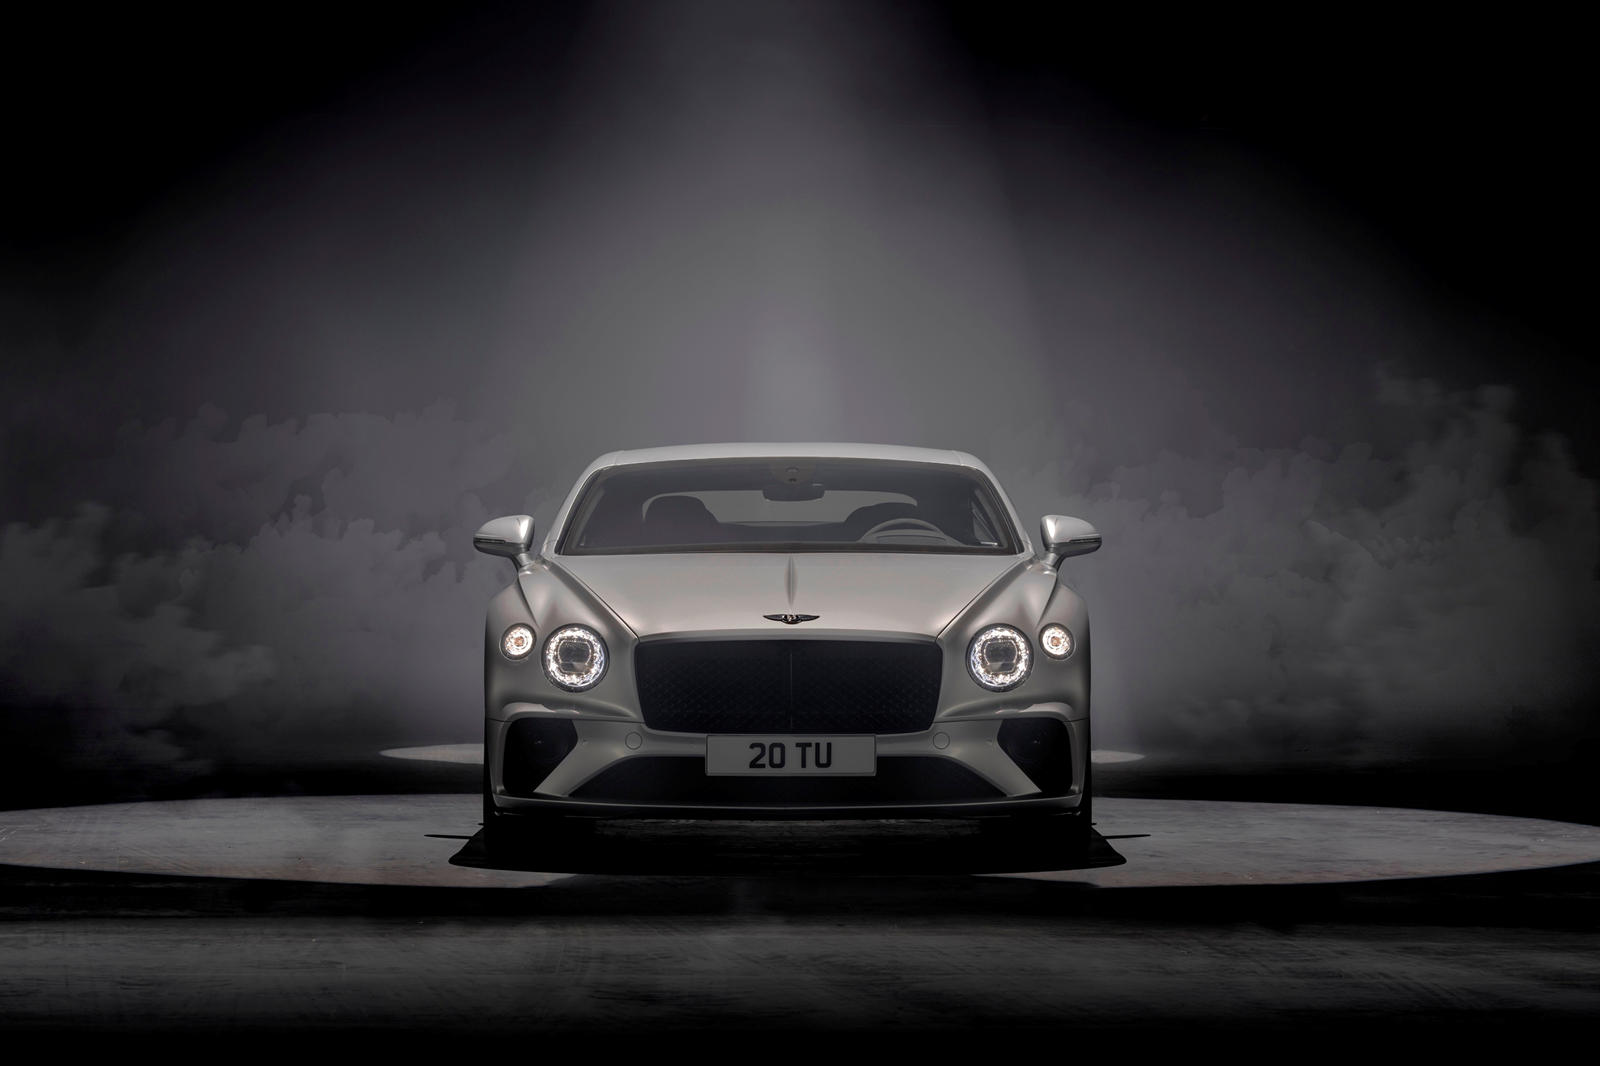 «Я бы пока не назвал это лебединой песней. В том, что по сути является новым двигателем, есть жизнь», - сказал Холлмарк, когда его спросили, будет ли Continental GT Speed последней моделью Bentley с двигателем W12 под капотом. «Это вершина нашего бре